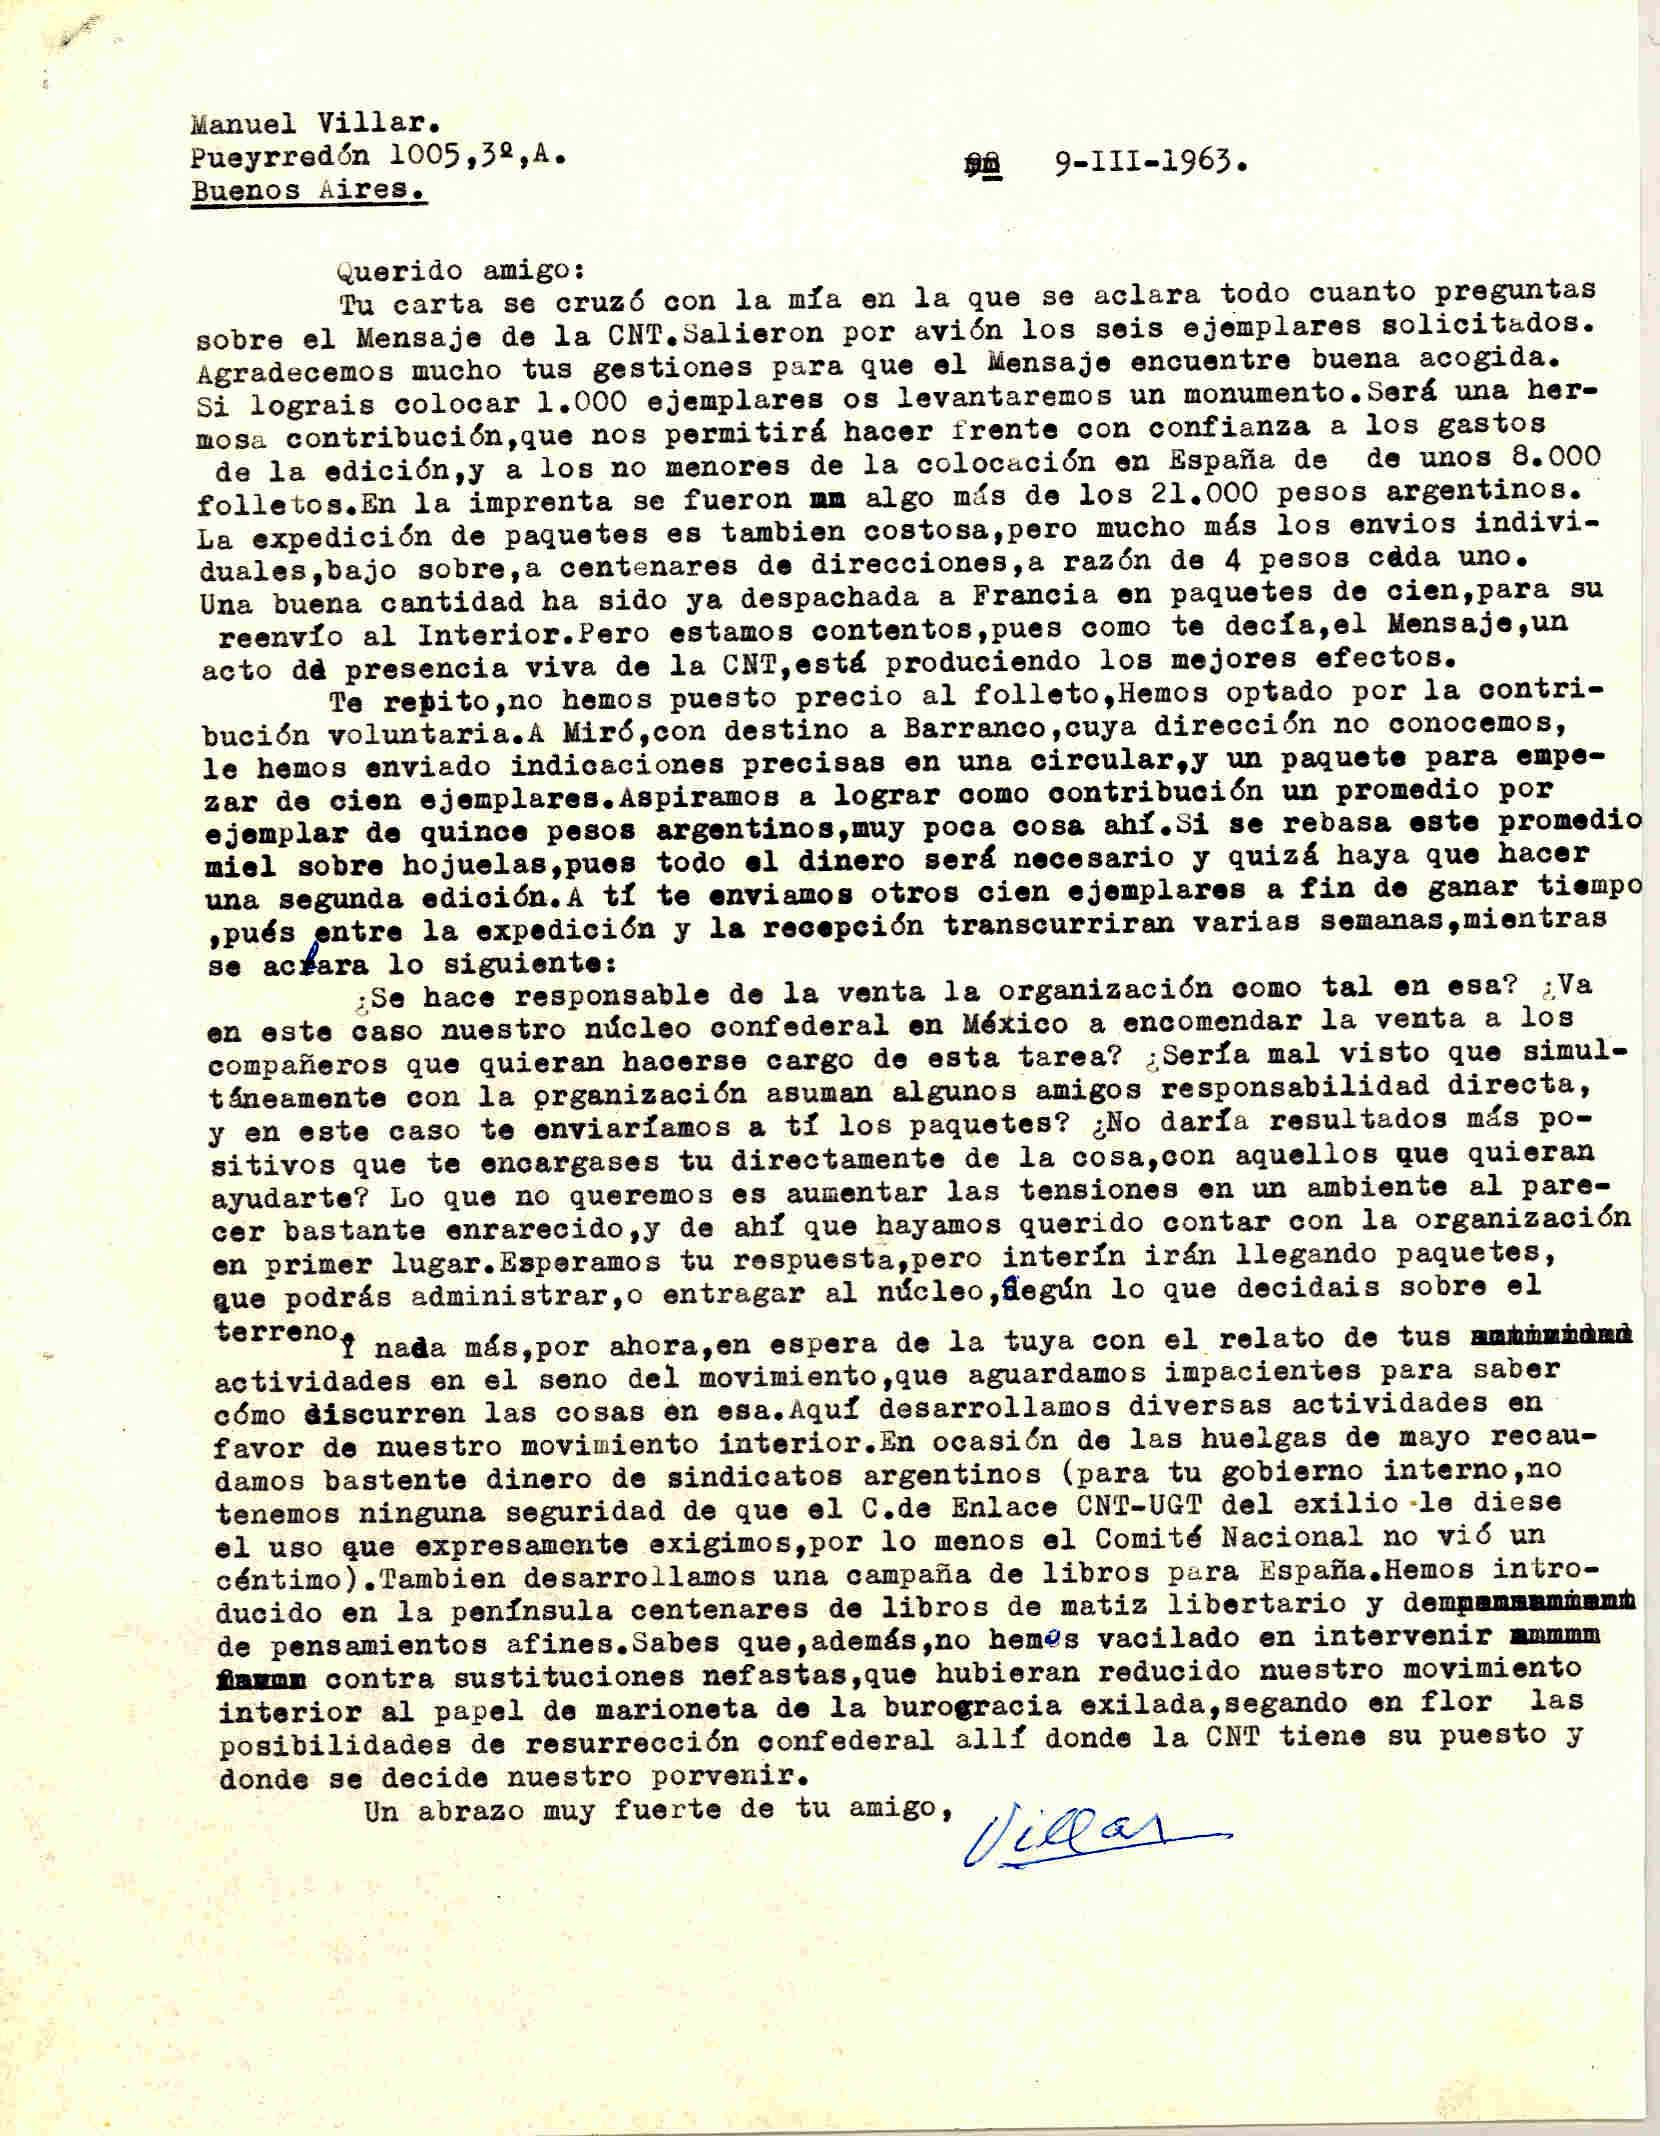 Carta de Manuel Villar sobre la difusión y acogida del folleto que contiene el Mensaje del CNT al pueblo español